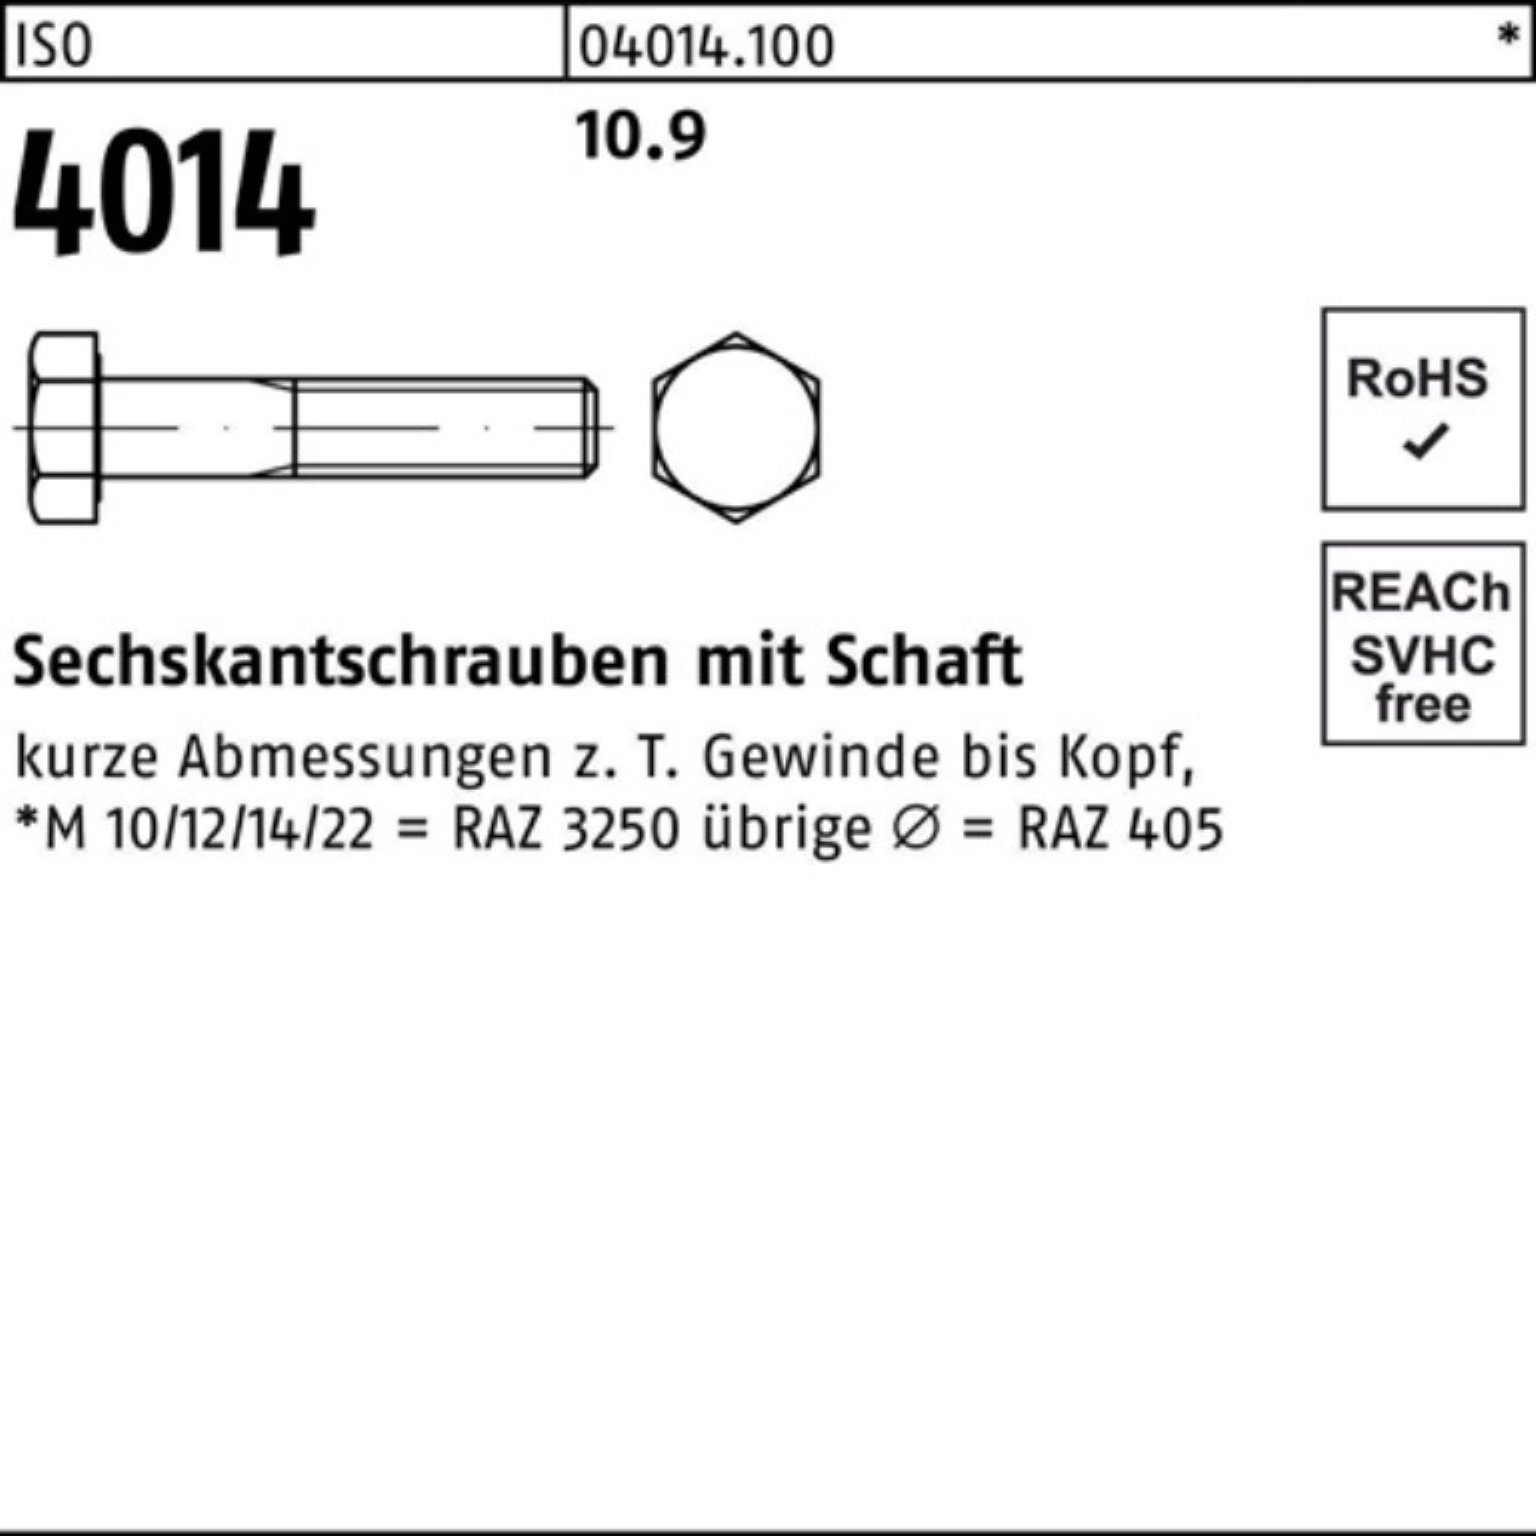 140 Bufab 50 Sechskantschraube Sechskantschraube I M12x 4014 Schaft 10.9 Stück 100er ISO Pack